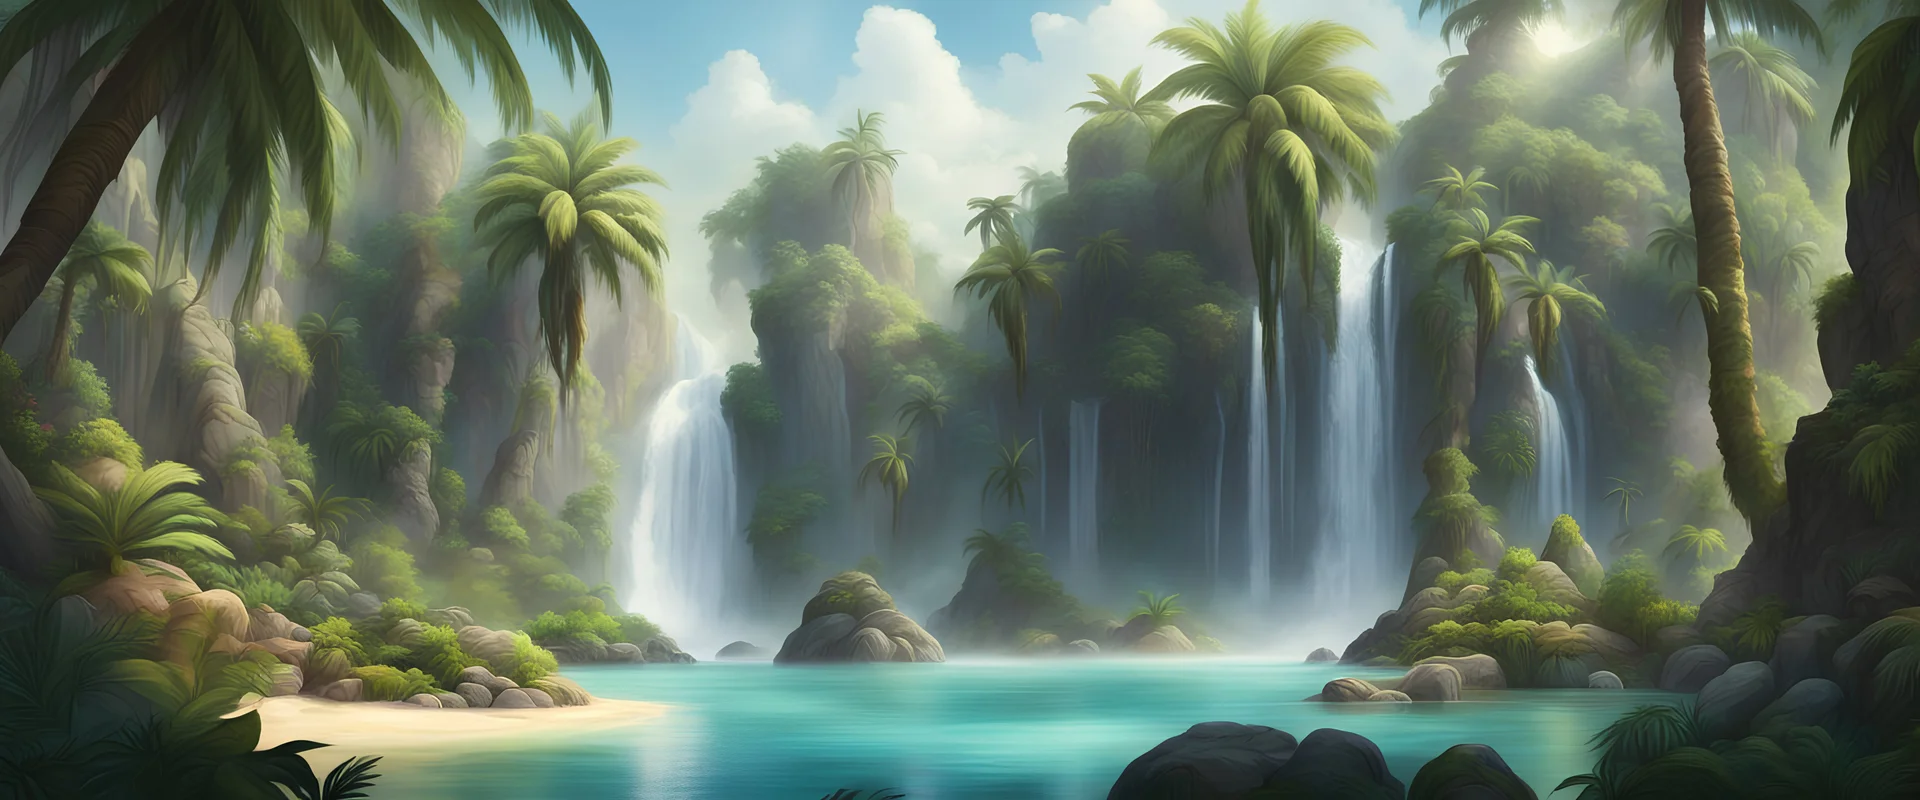 джунгли пальмы скалы водопады фэнтези арт